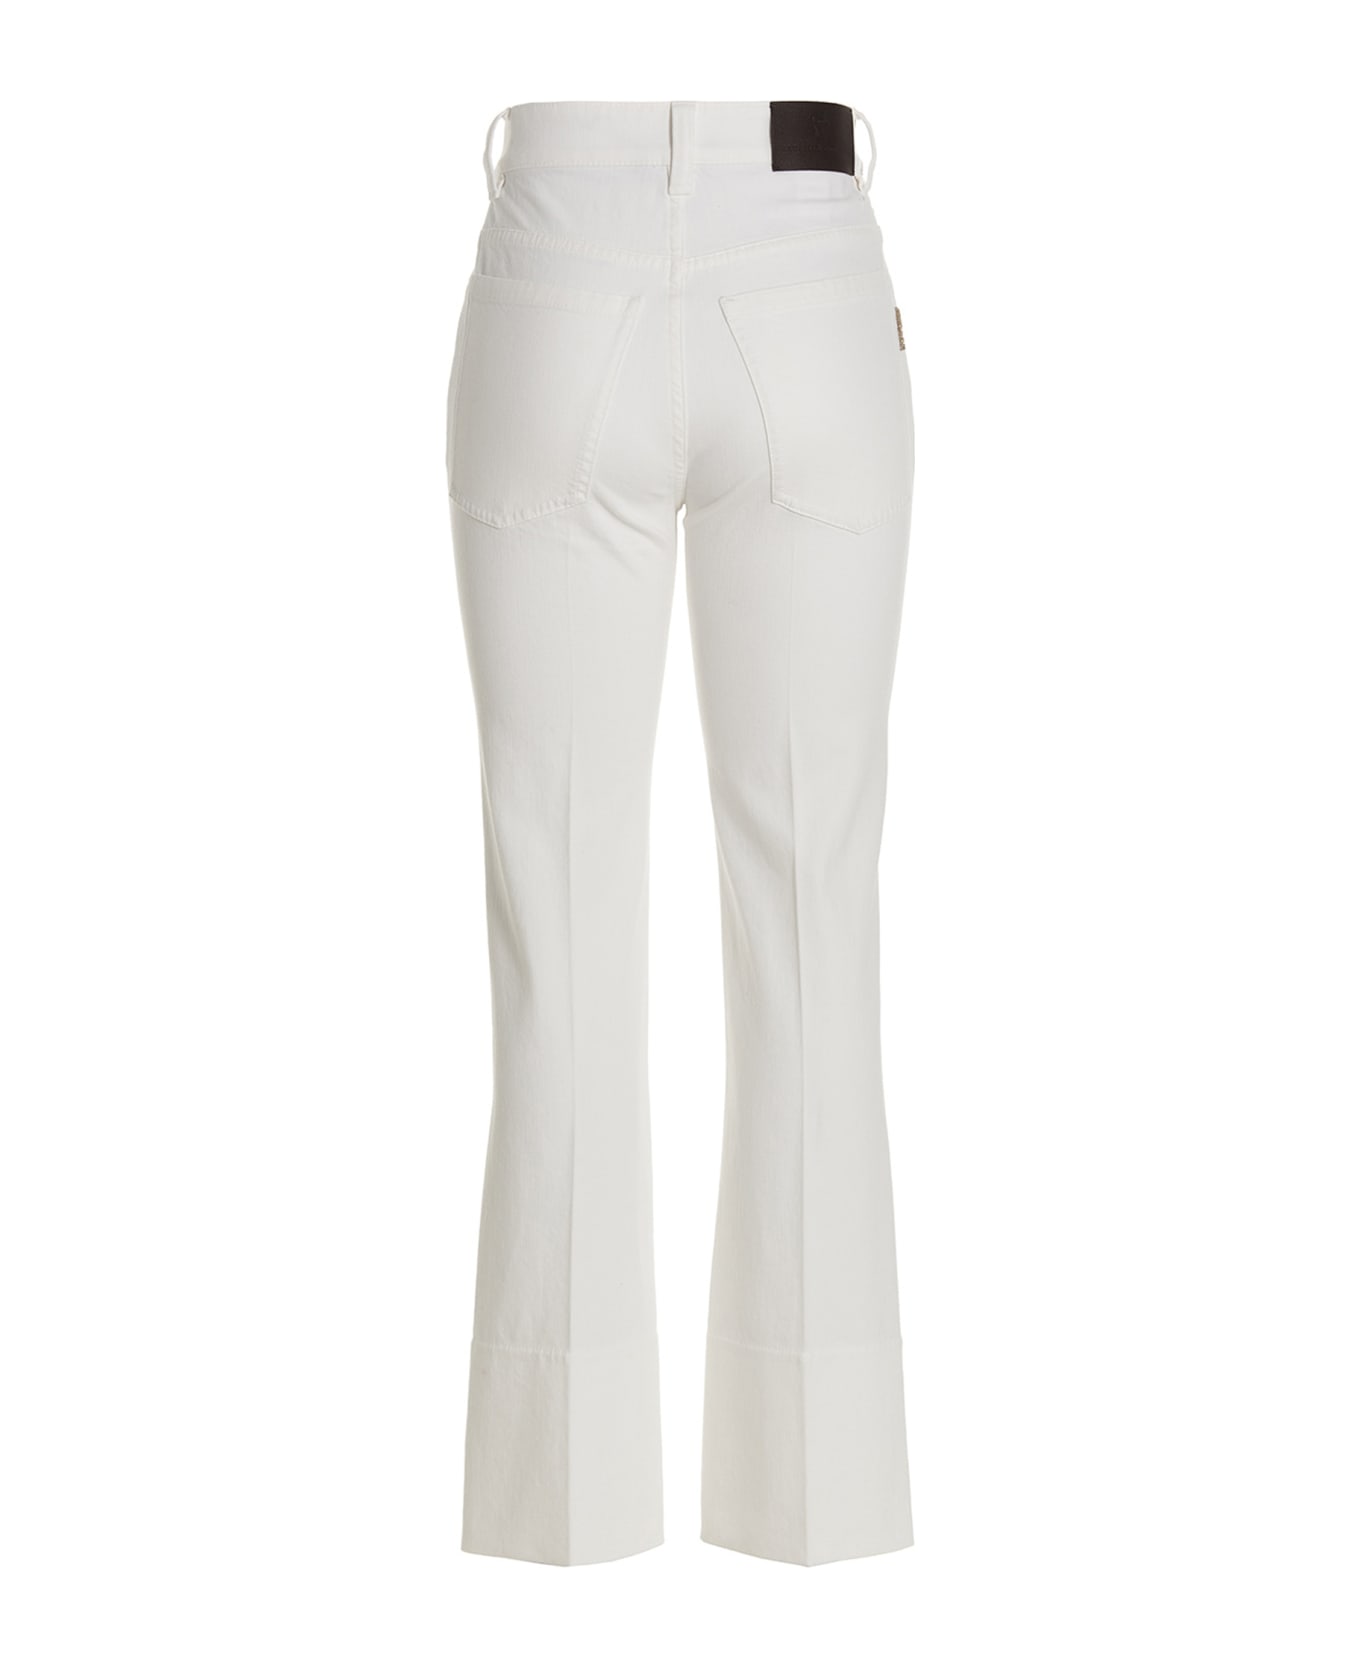 Brunello Cucinelli Cigarette-style Jeans - White ボトムス